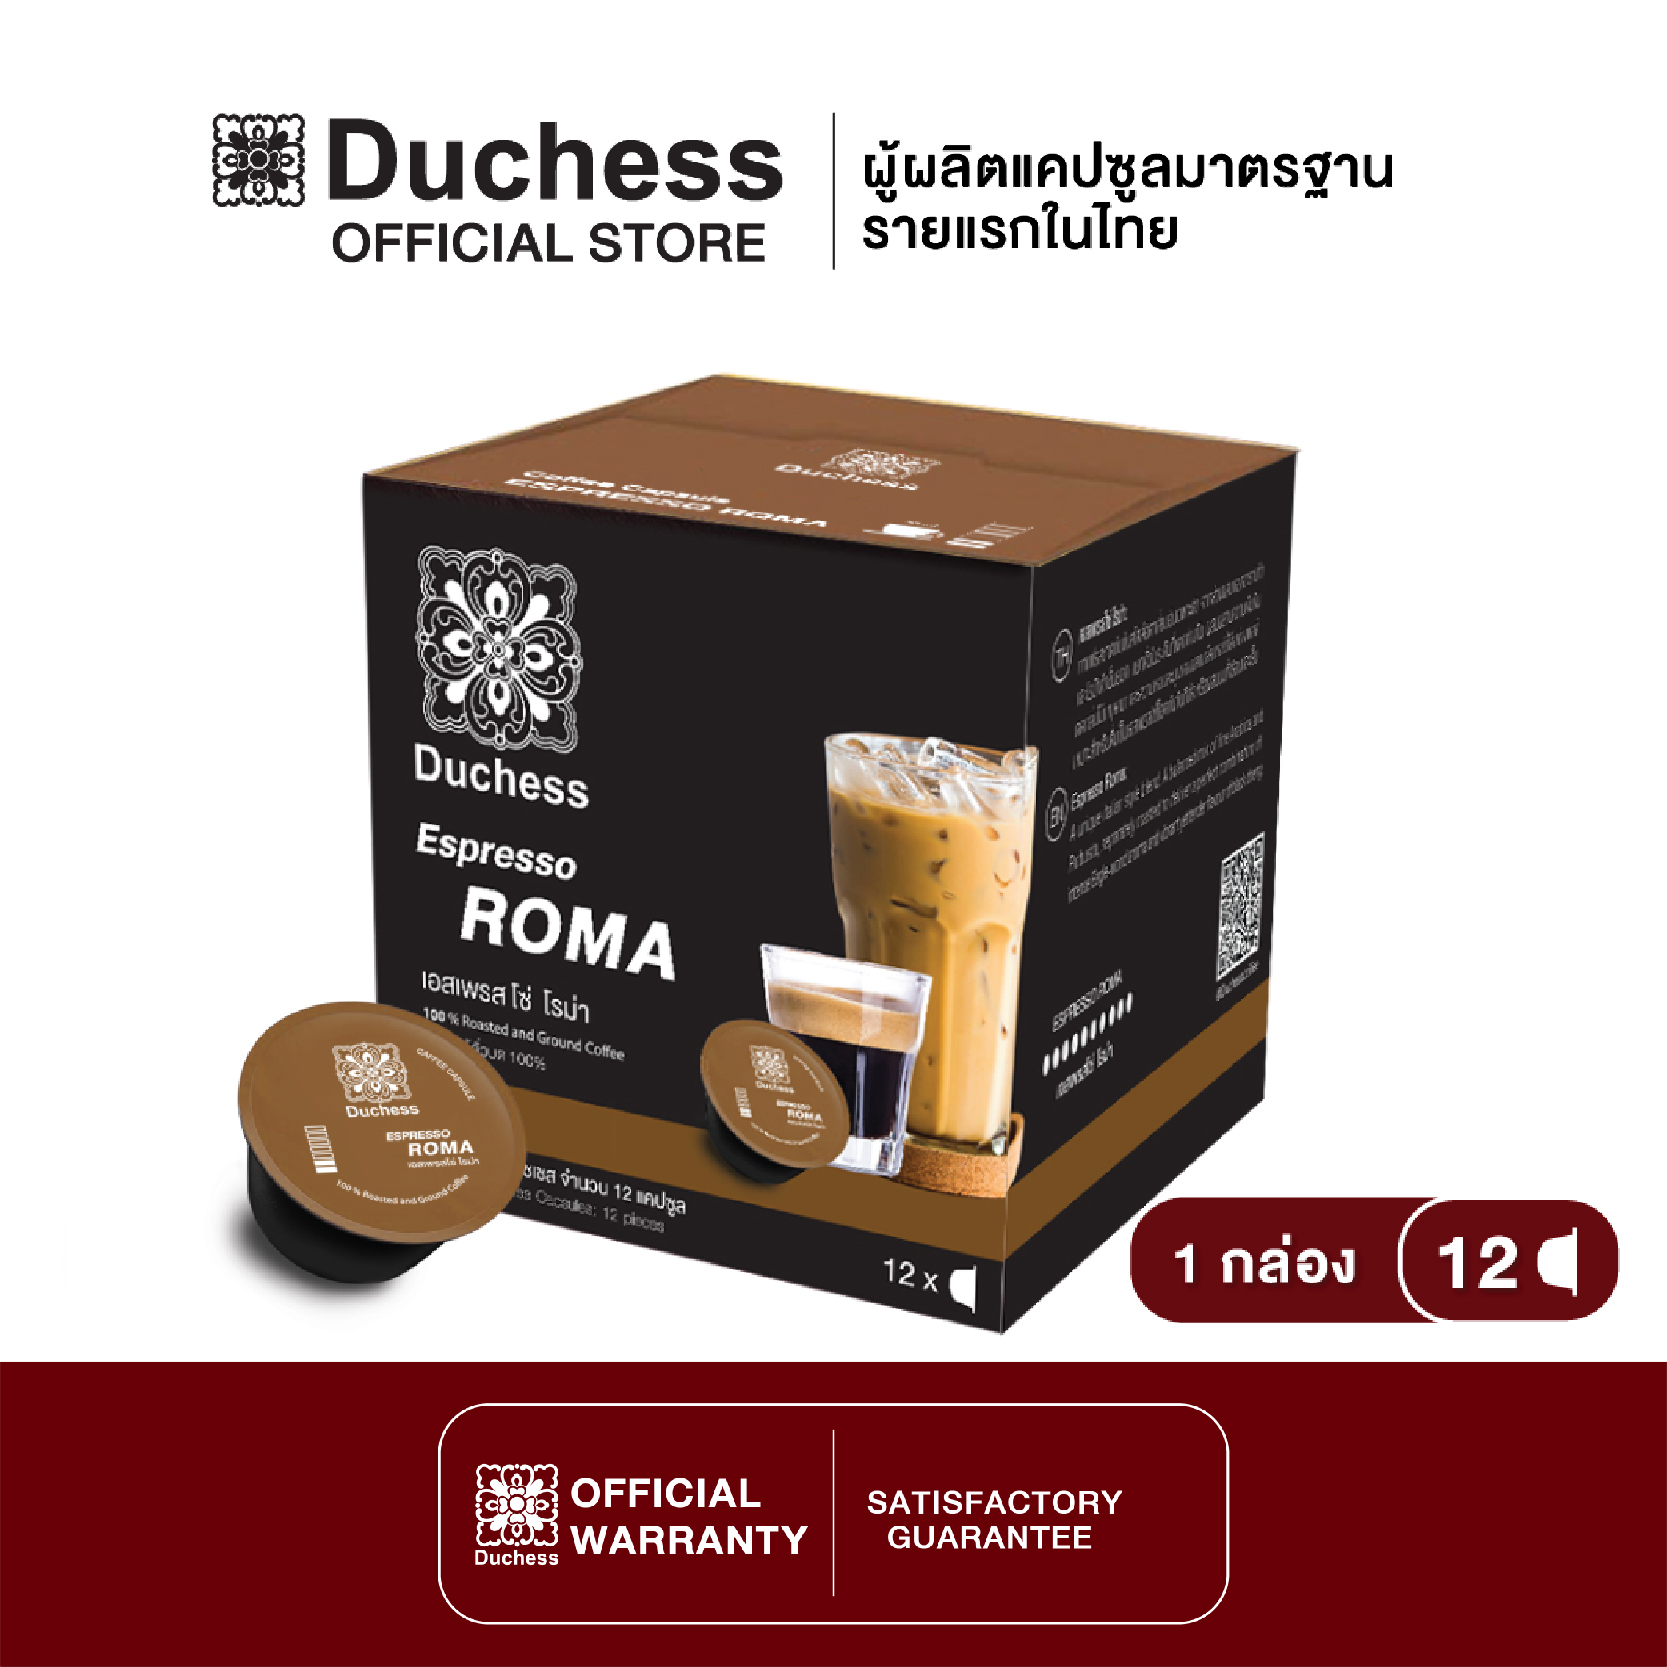 Duchess CO2005 - กาแฟแคปซูล 1 กล่อง (12 แคปซูล) - Espresso Roma ( Dolce gusto compatible )